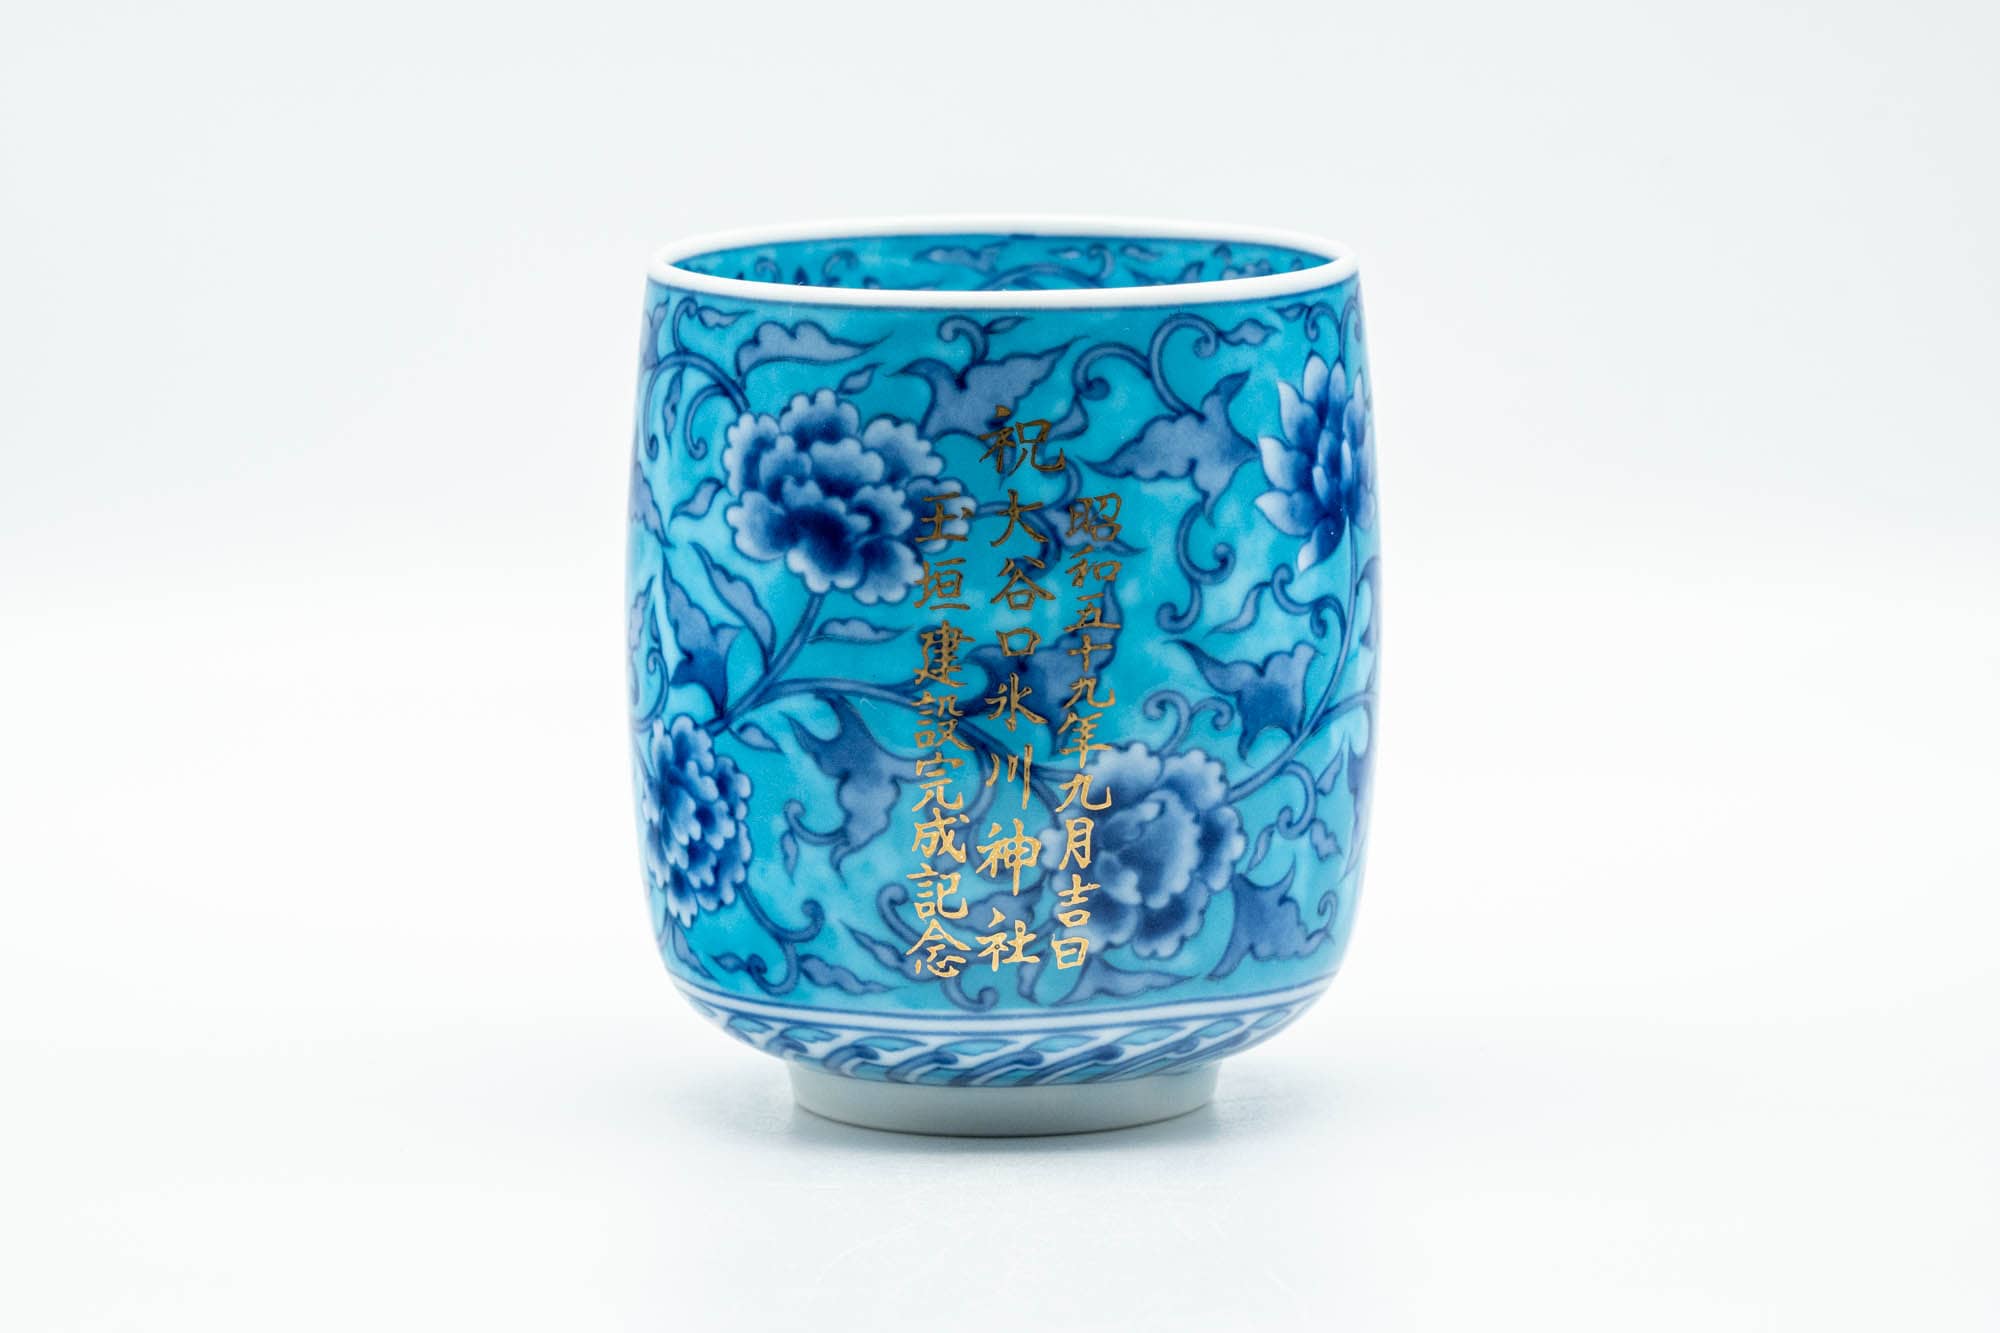 Japanese Teacup - Large Blue Floral Gold Kanji Arita-yaki Yunomi - 240ml - Tezumi